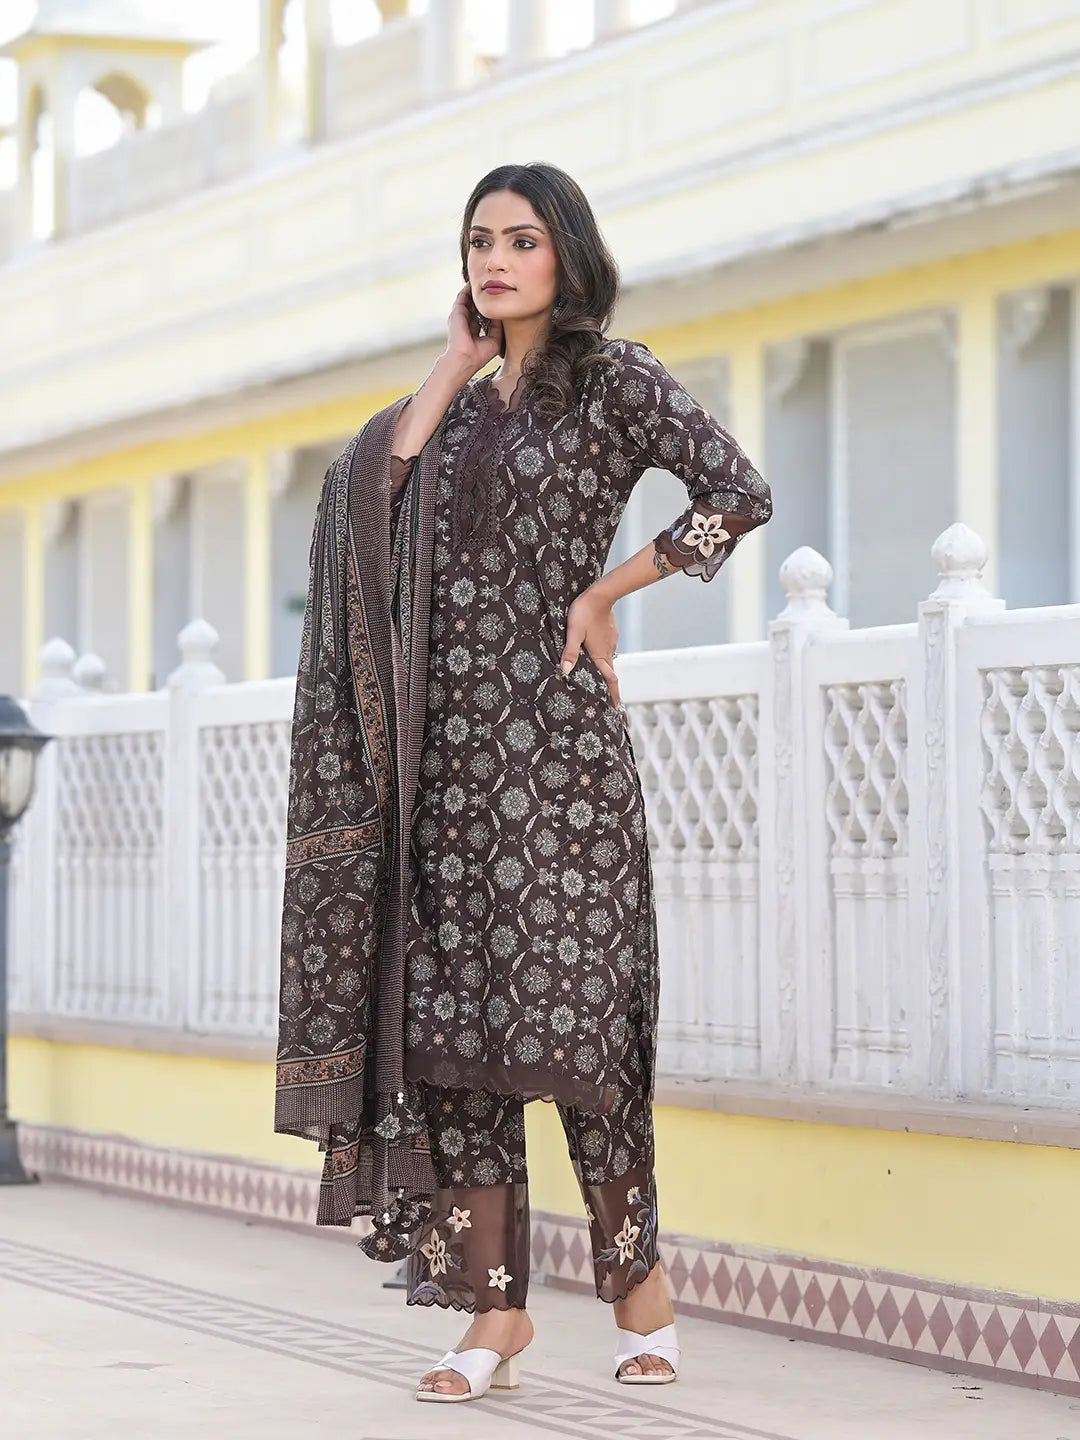 Brown Ethnic Motifs Pakistani Style Kurta Trouser And Dupatta Set